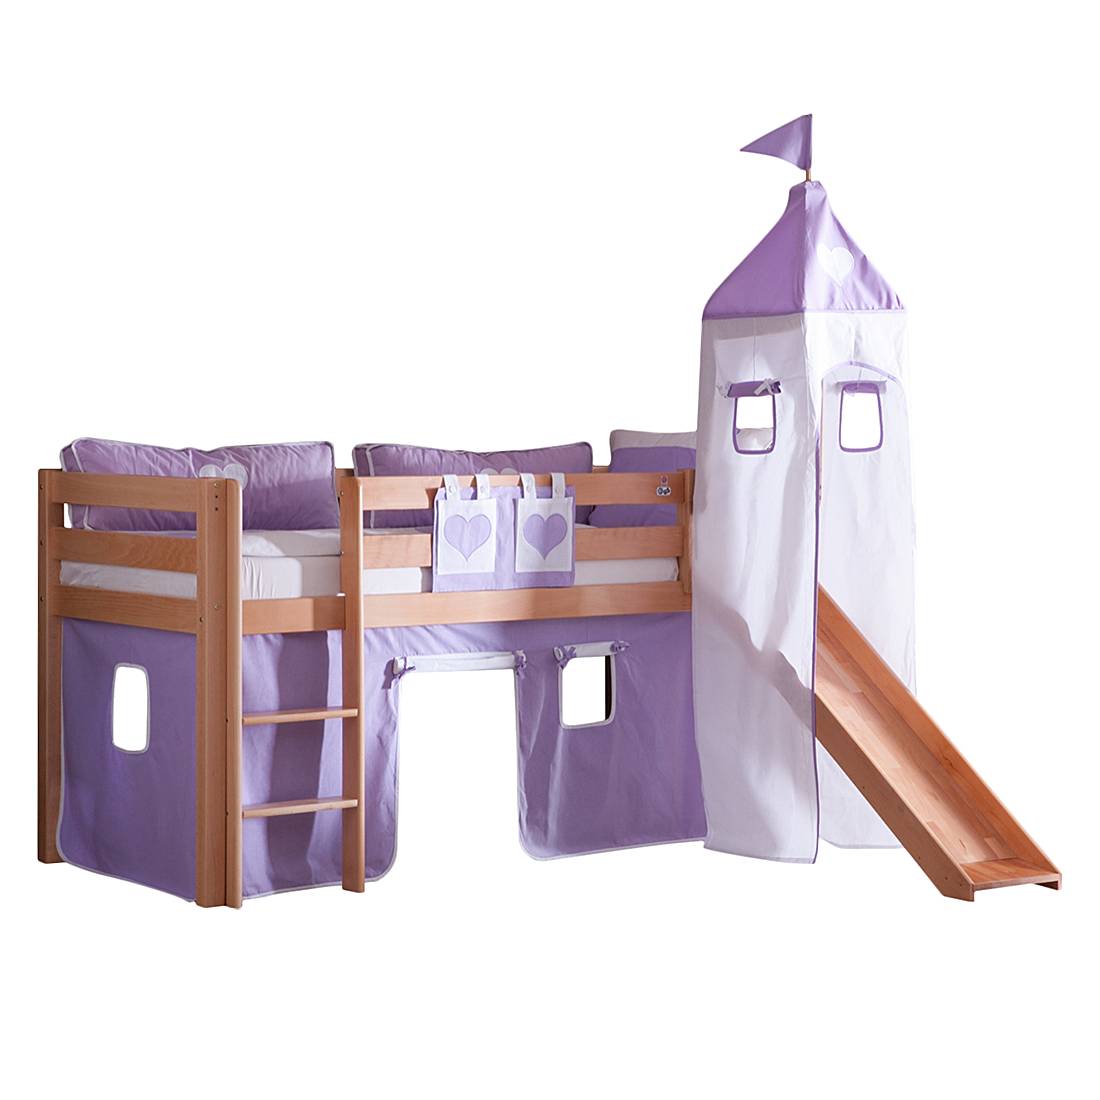 Spielbett Alex - mit Rutsche , Vorhang, Turm und Tasche - Buche natur/Textil purple-weiß-herz, Relita